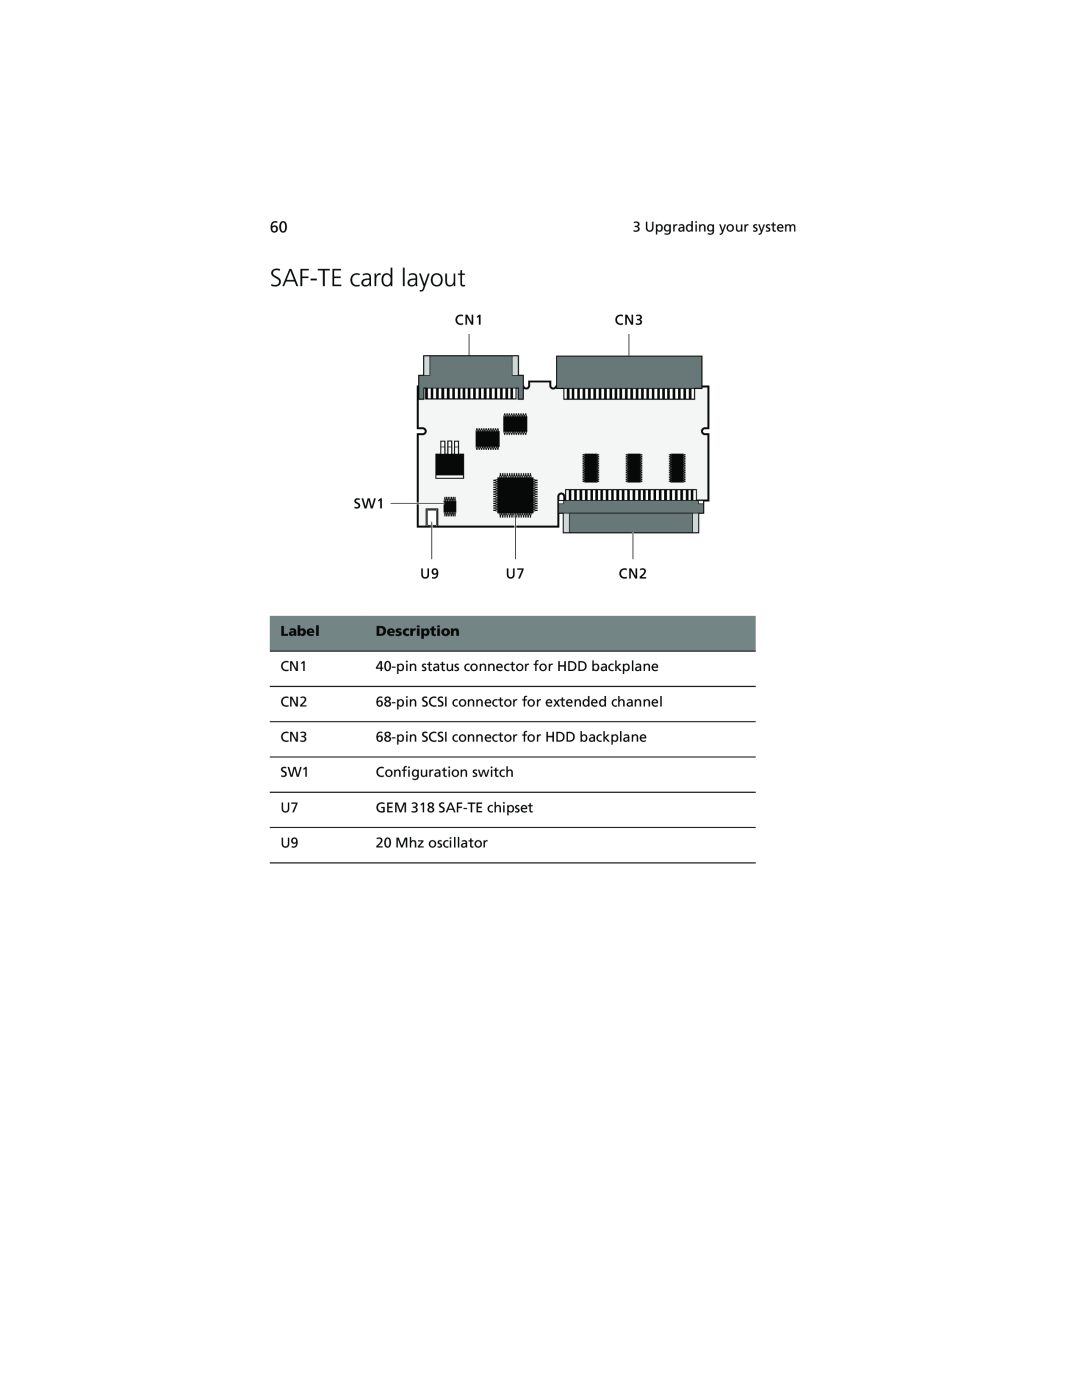 Acer Altos G610 manual SAF-TE card layout, Label, Description 